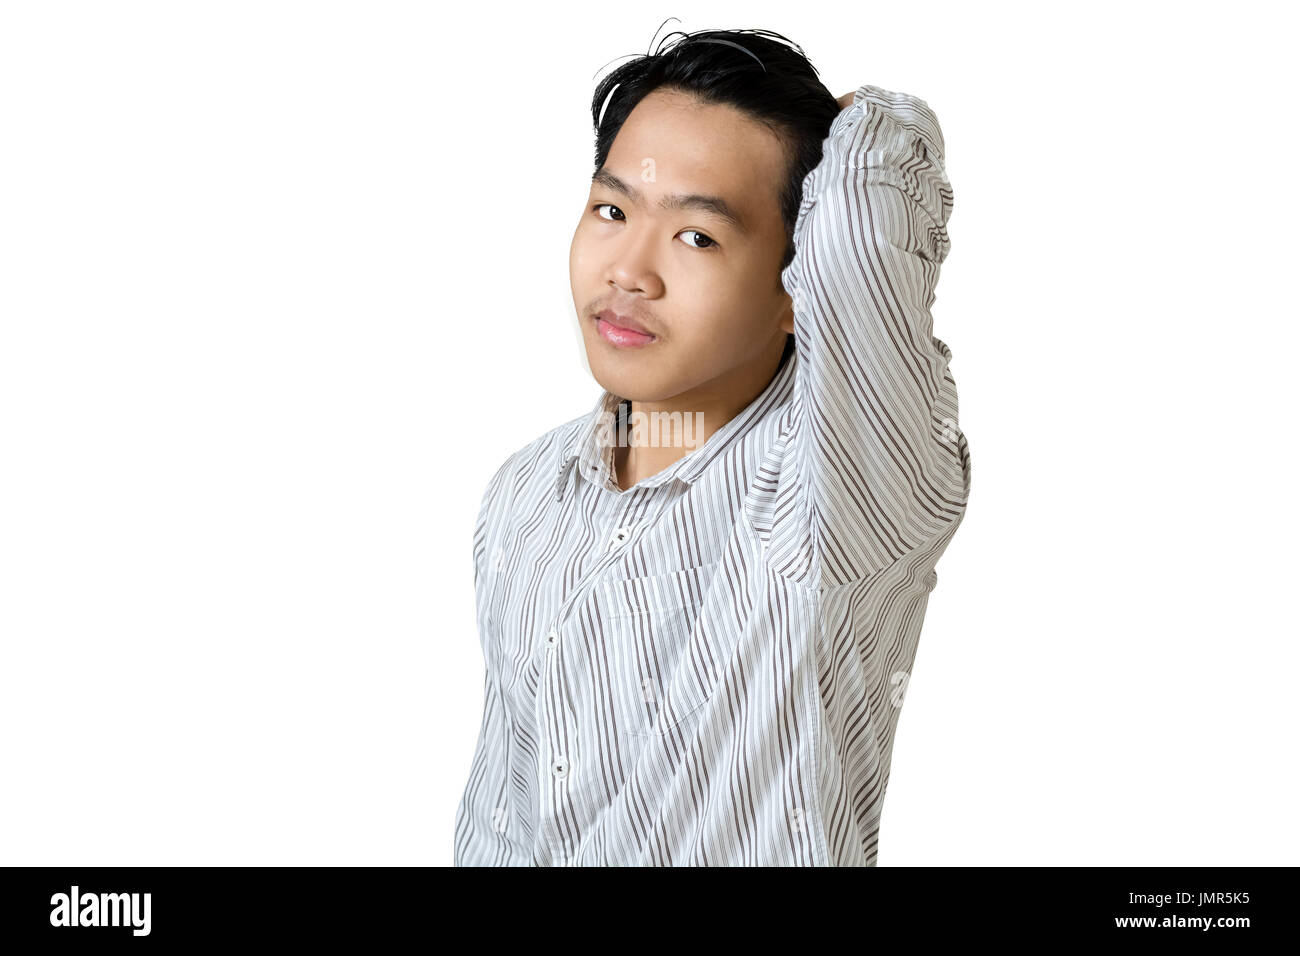 Ritratto di un giovane asian business man rendendo (i capelli) liscia e lucida, tipicamente mediante applicazione di pressione o di umidità. Isolato su bianco backgr Foto Stock